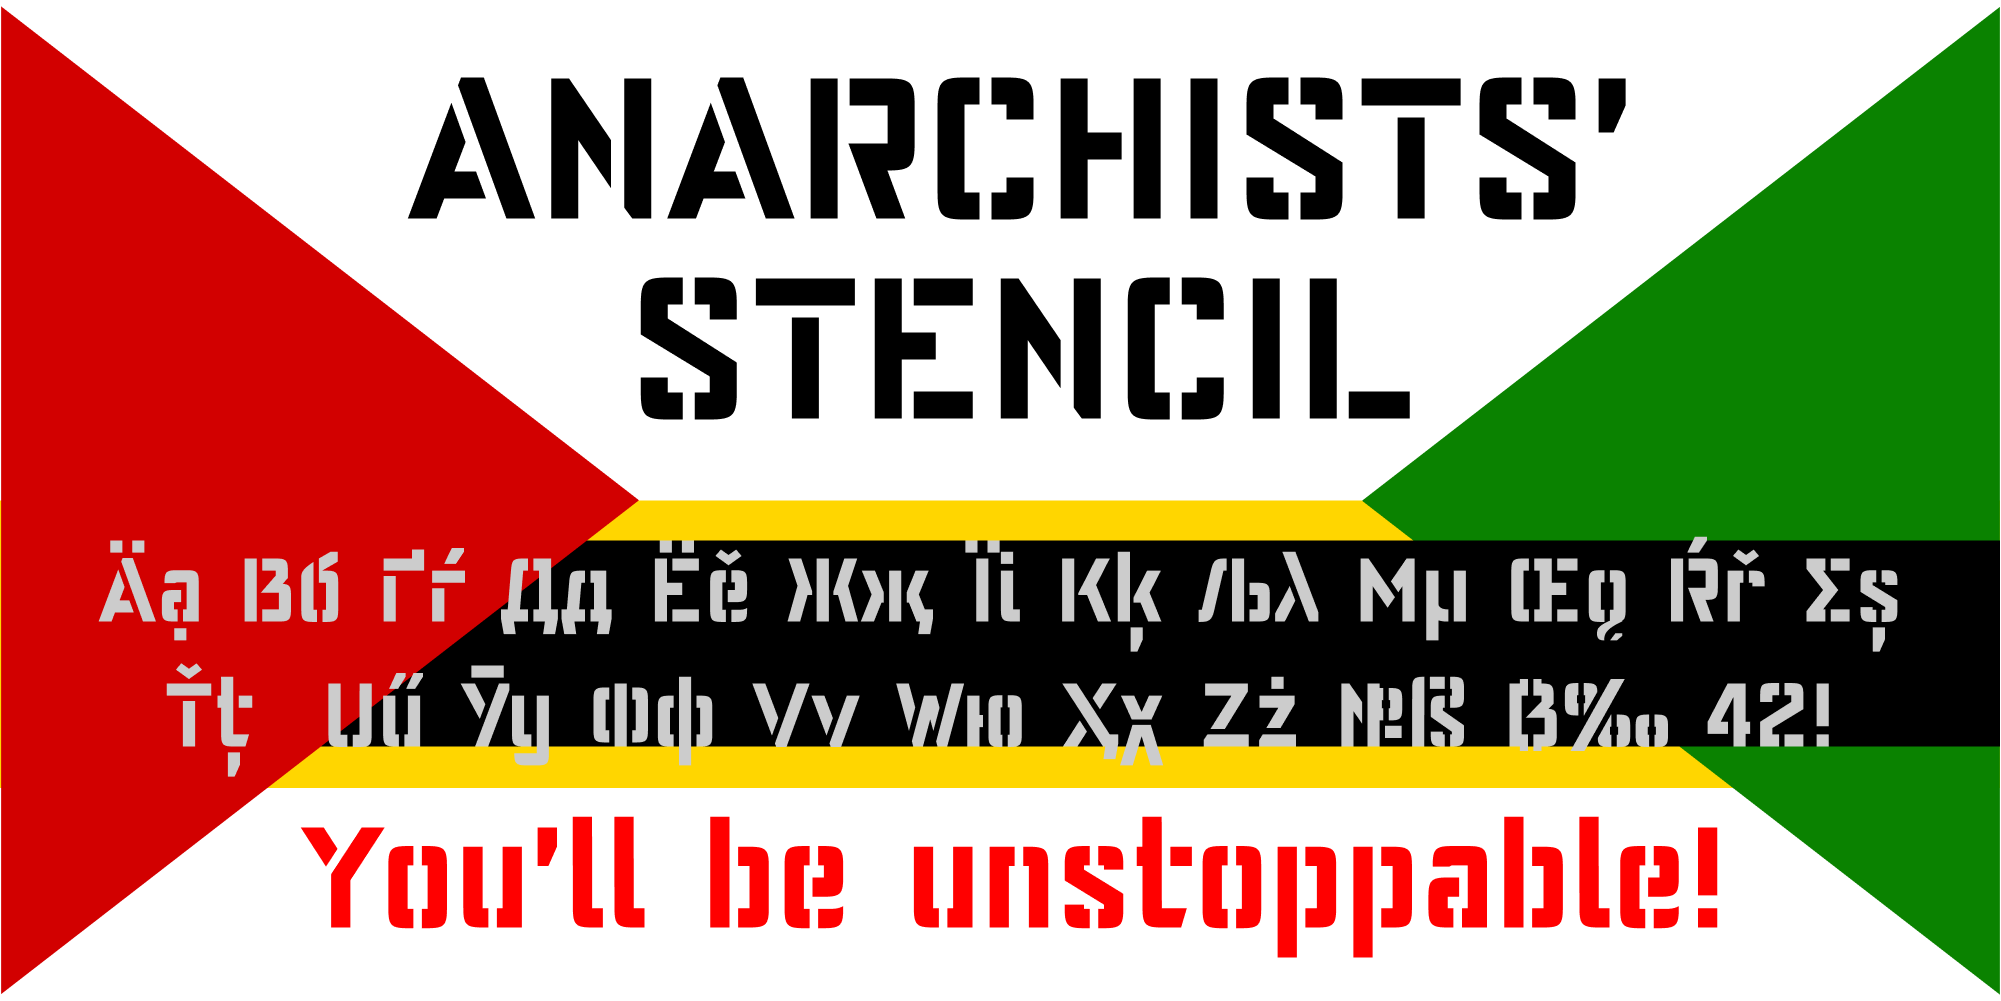 Anarchists' Stencil Font by Dimka